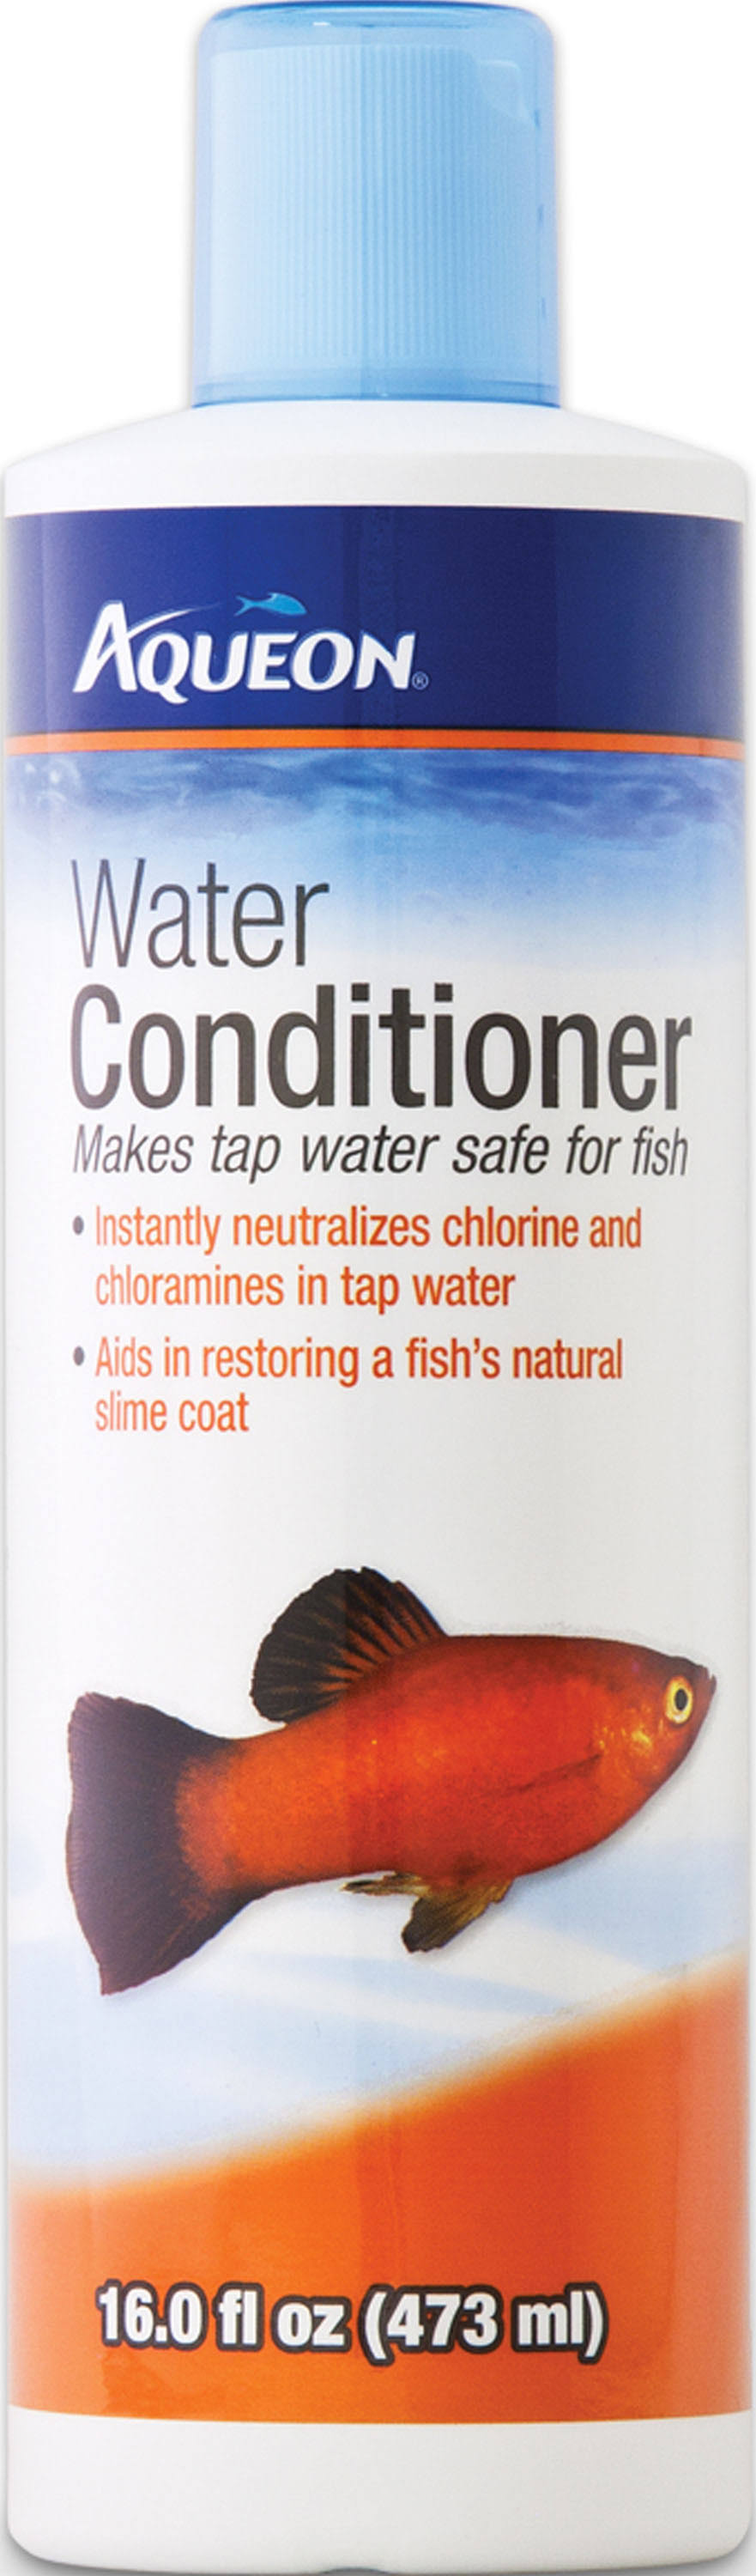 Aqueon Water Conditioner - 473ml